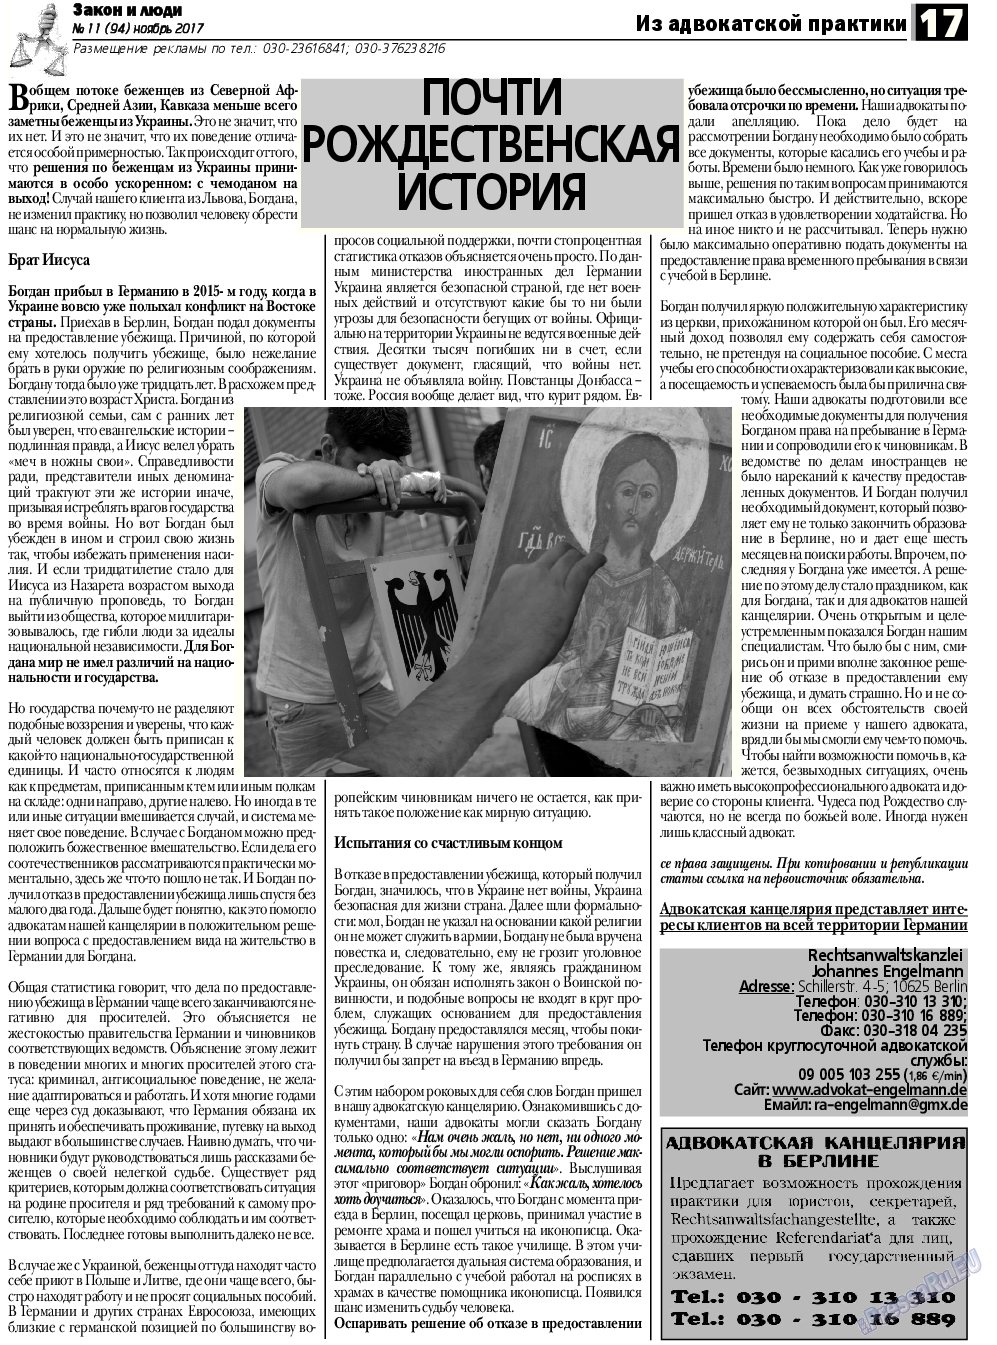 Закон и люди, газета. 2017 №11 стр.17